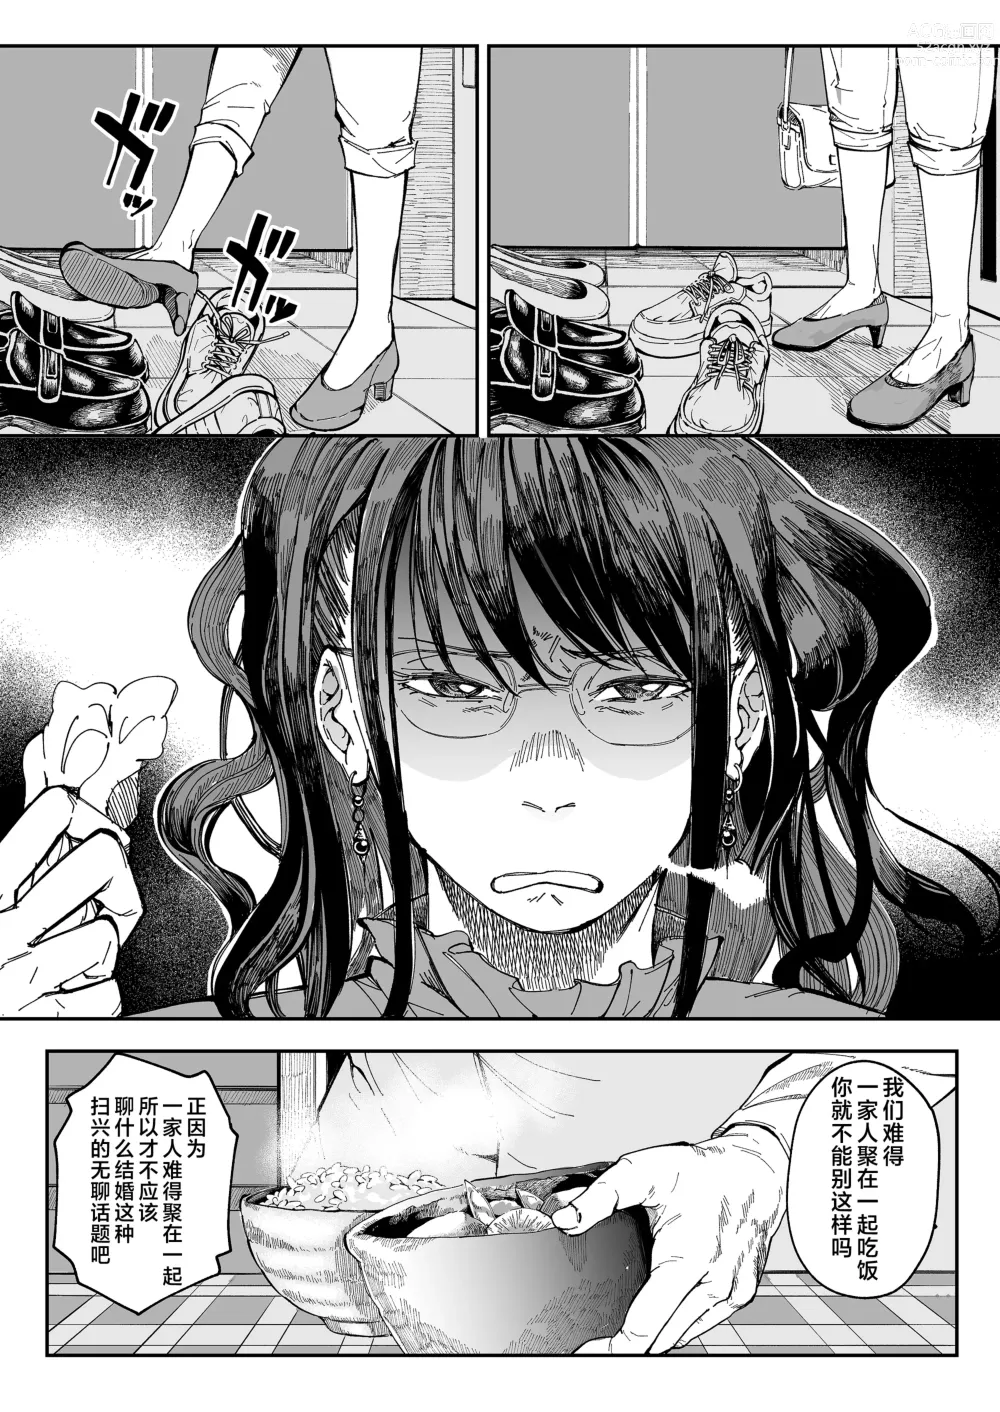 Page 4 of doujinshi 找到了姐姐的福利小号